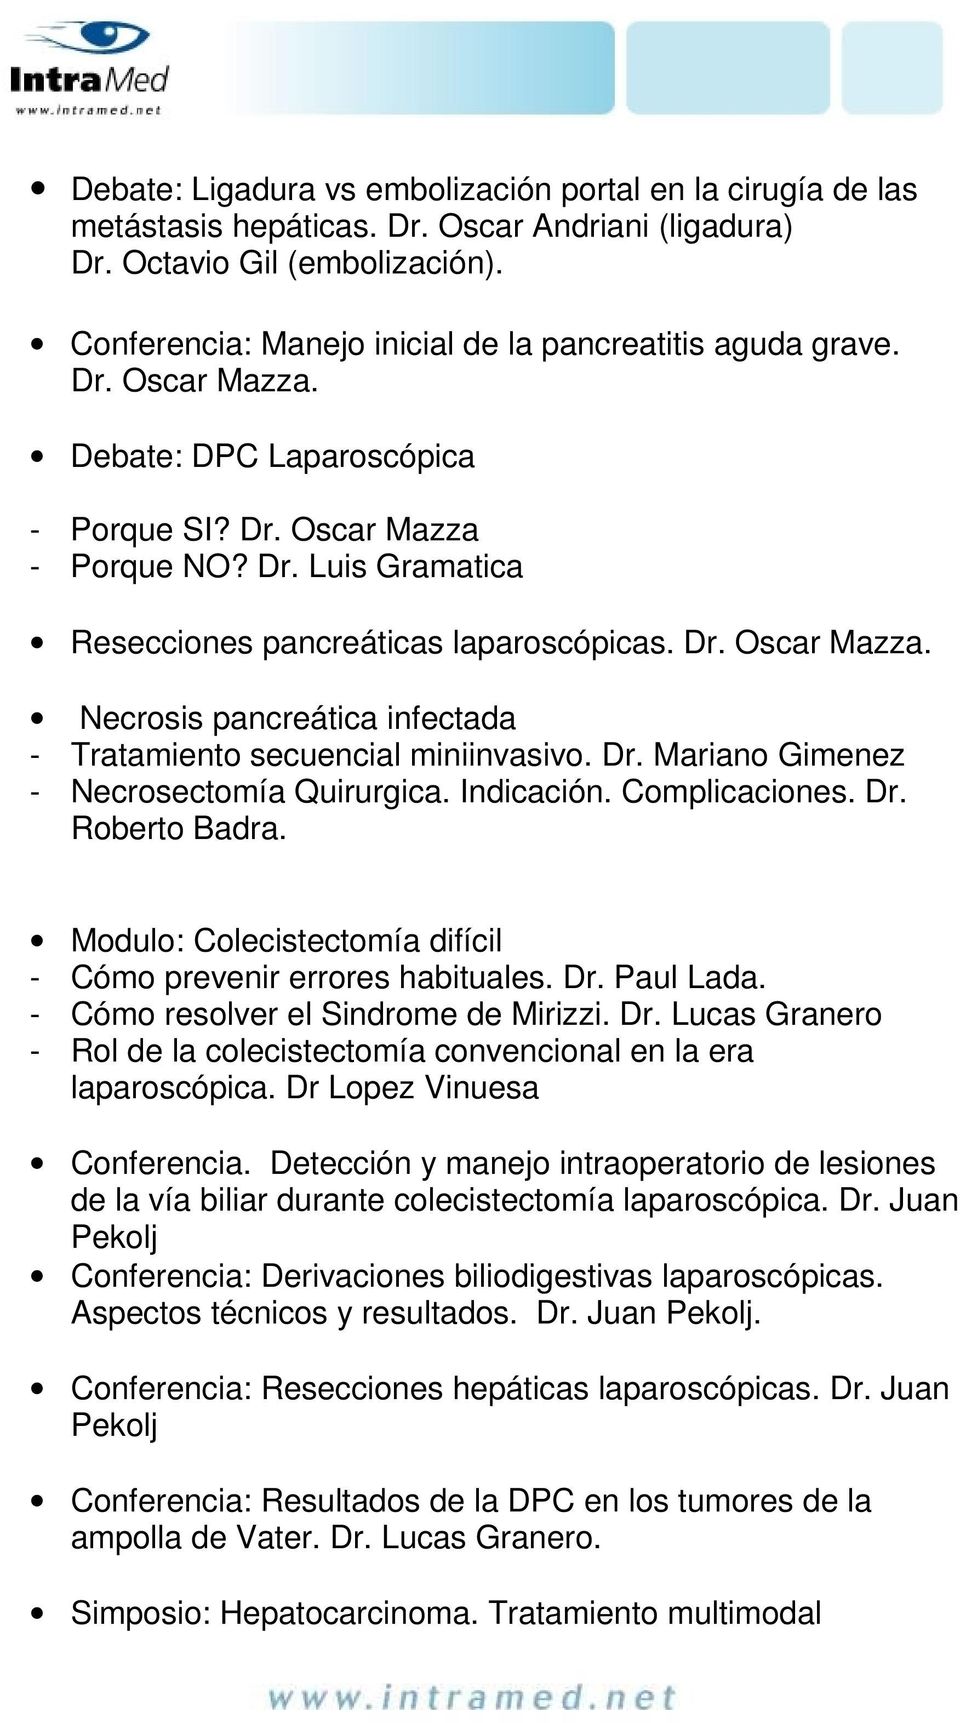 Dr. Oscar Mazza. Necrosis pancreática infectada - Tratamiento secuencial miniinvasivo. Dr. Mariano Gimenez - Necrosectomía Quirurgica. Indicación. Complicaciones. Dr. Roberto Badra.